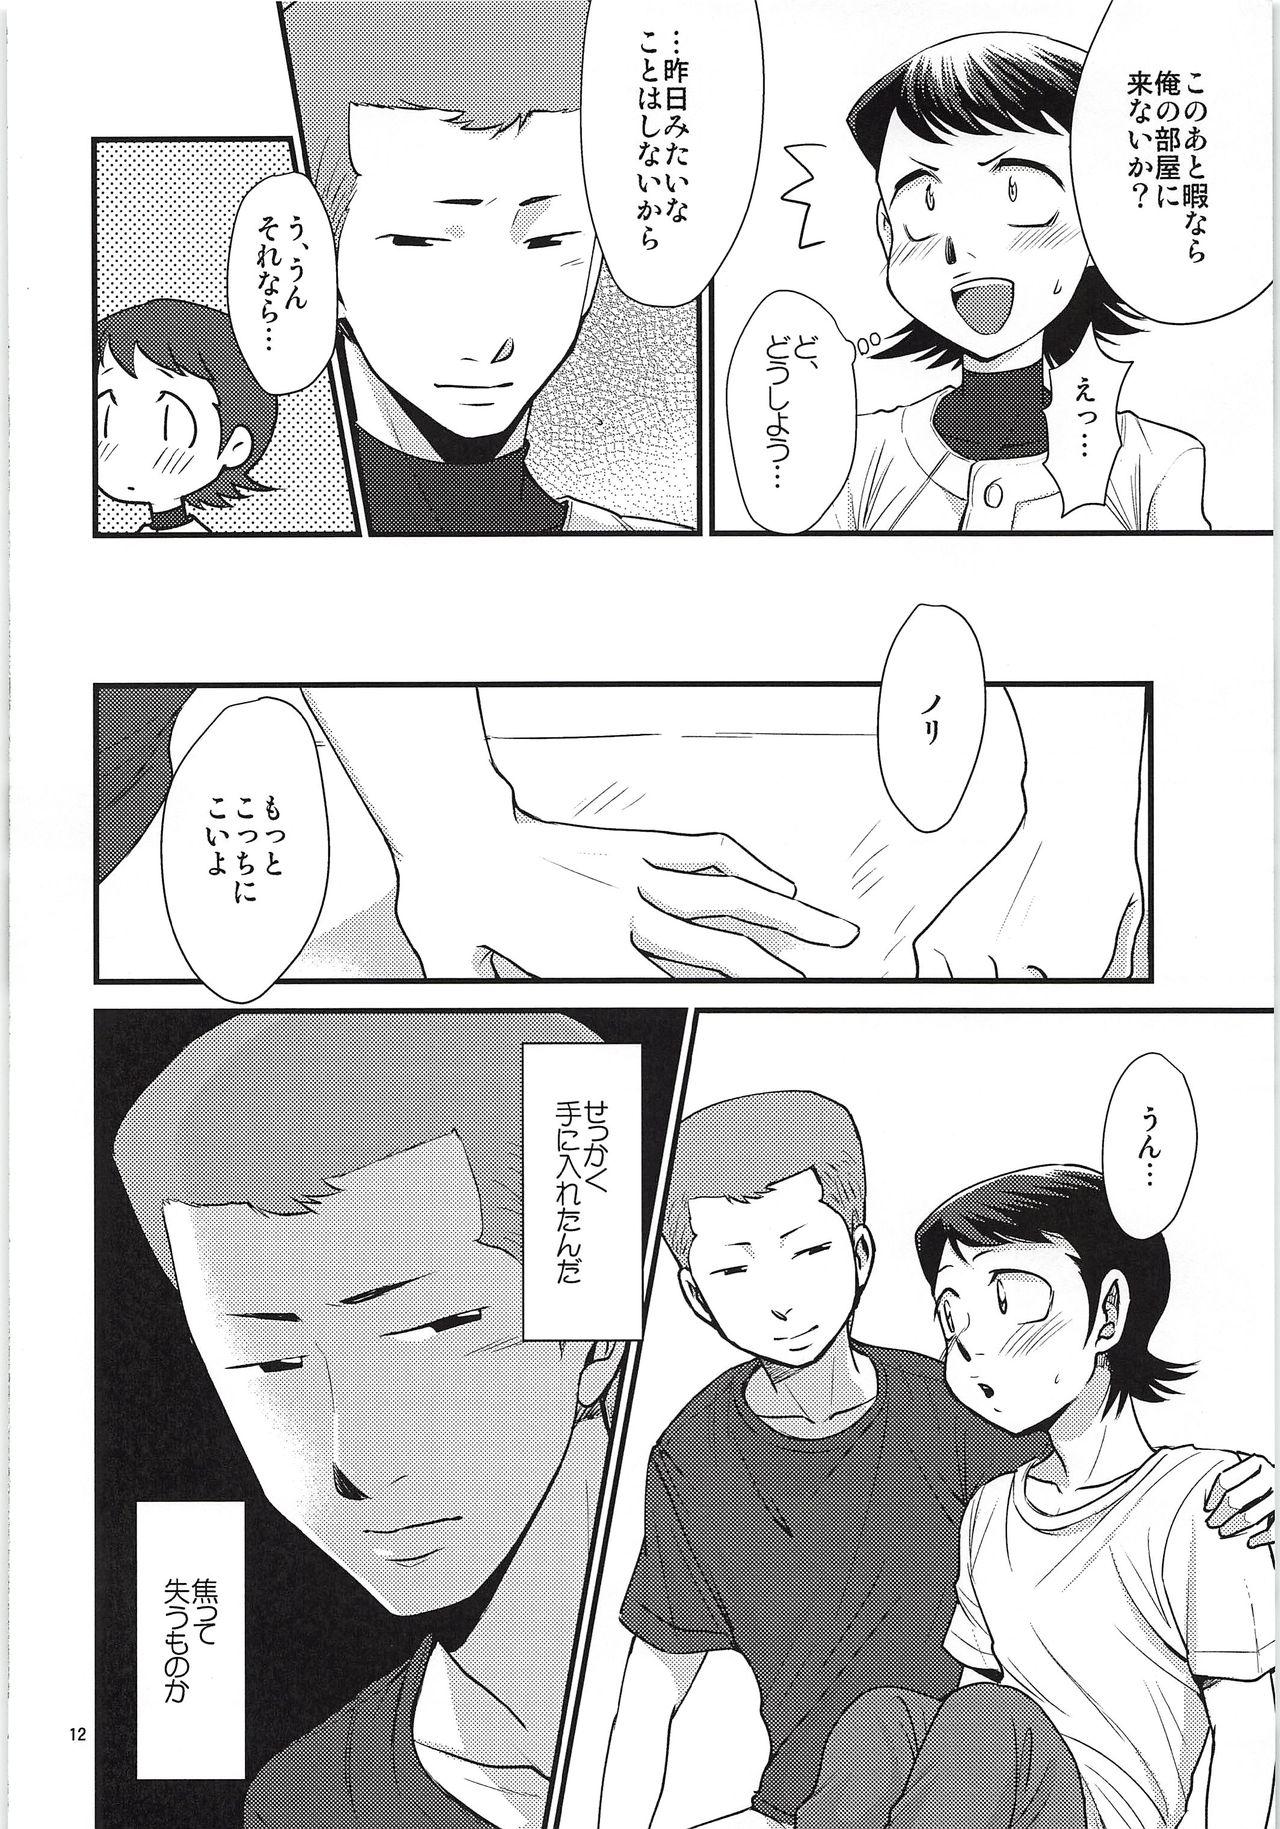 Fingering Tsukiatte 3 Nichimenanoni Kareshi ga Guigui Semetekuru Ken - Daiya no ace Striptease - Page 11